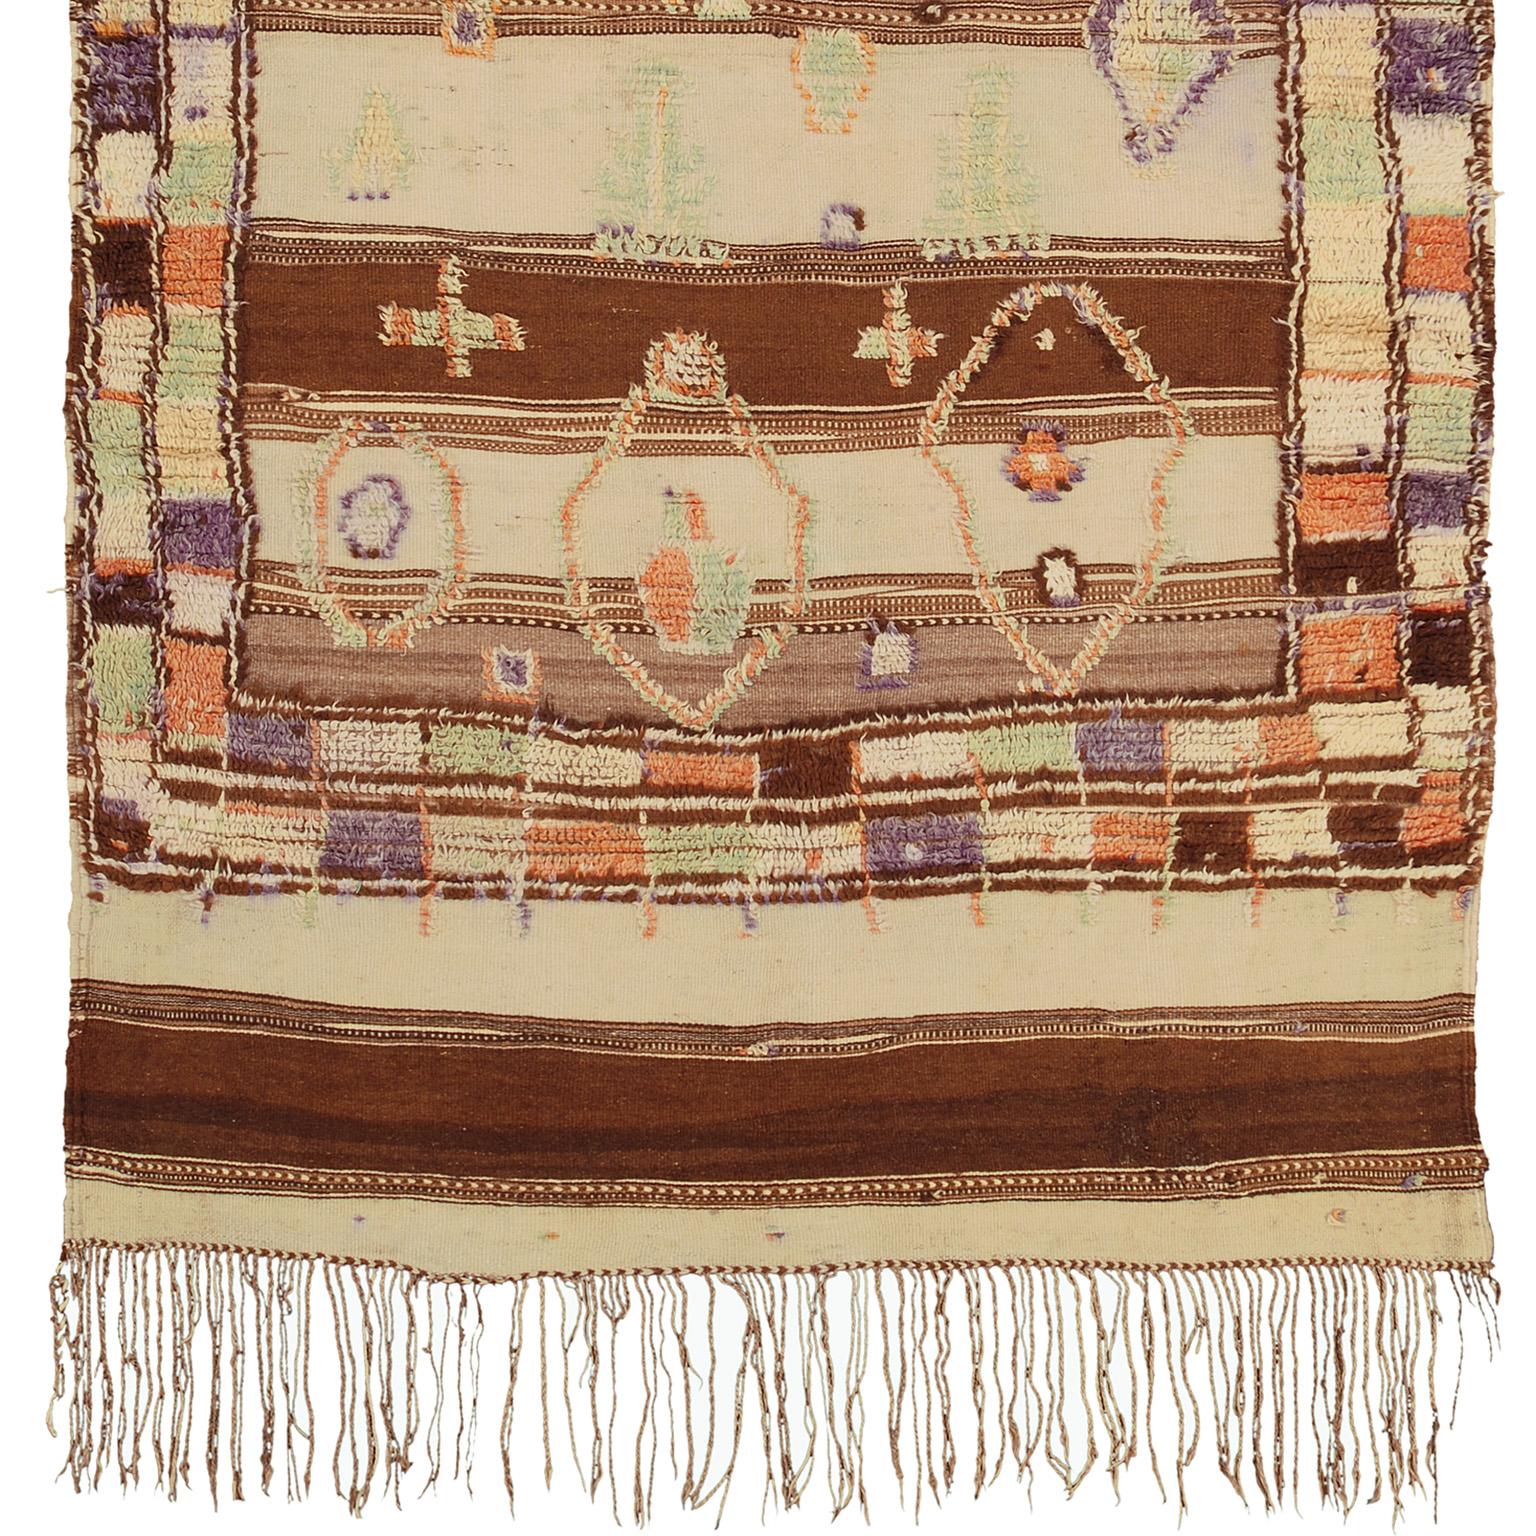 Mid-20th century Moroccan Glaoua carpet
Morocco, mid-20th century
Handwoven.